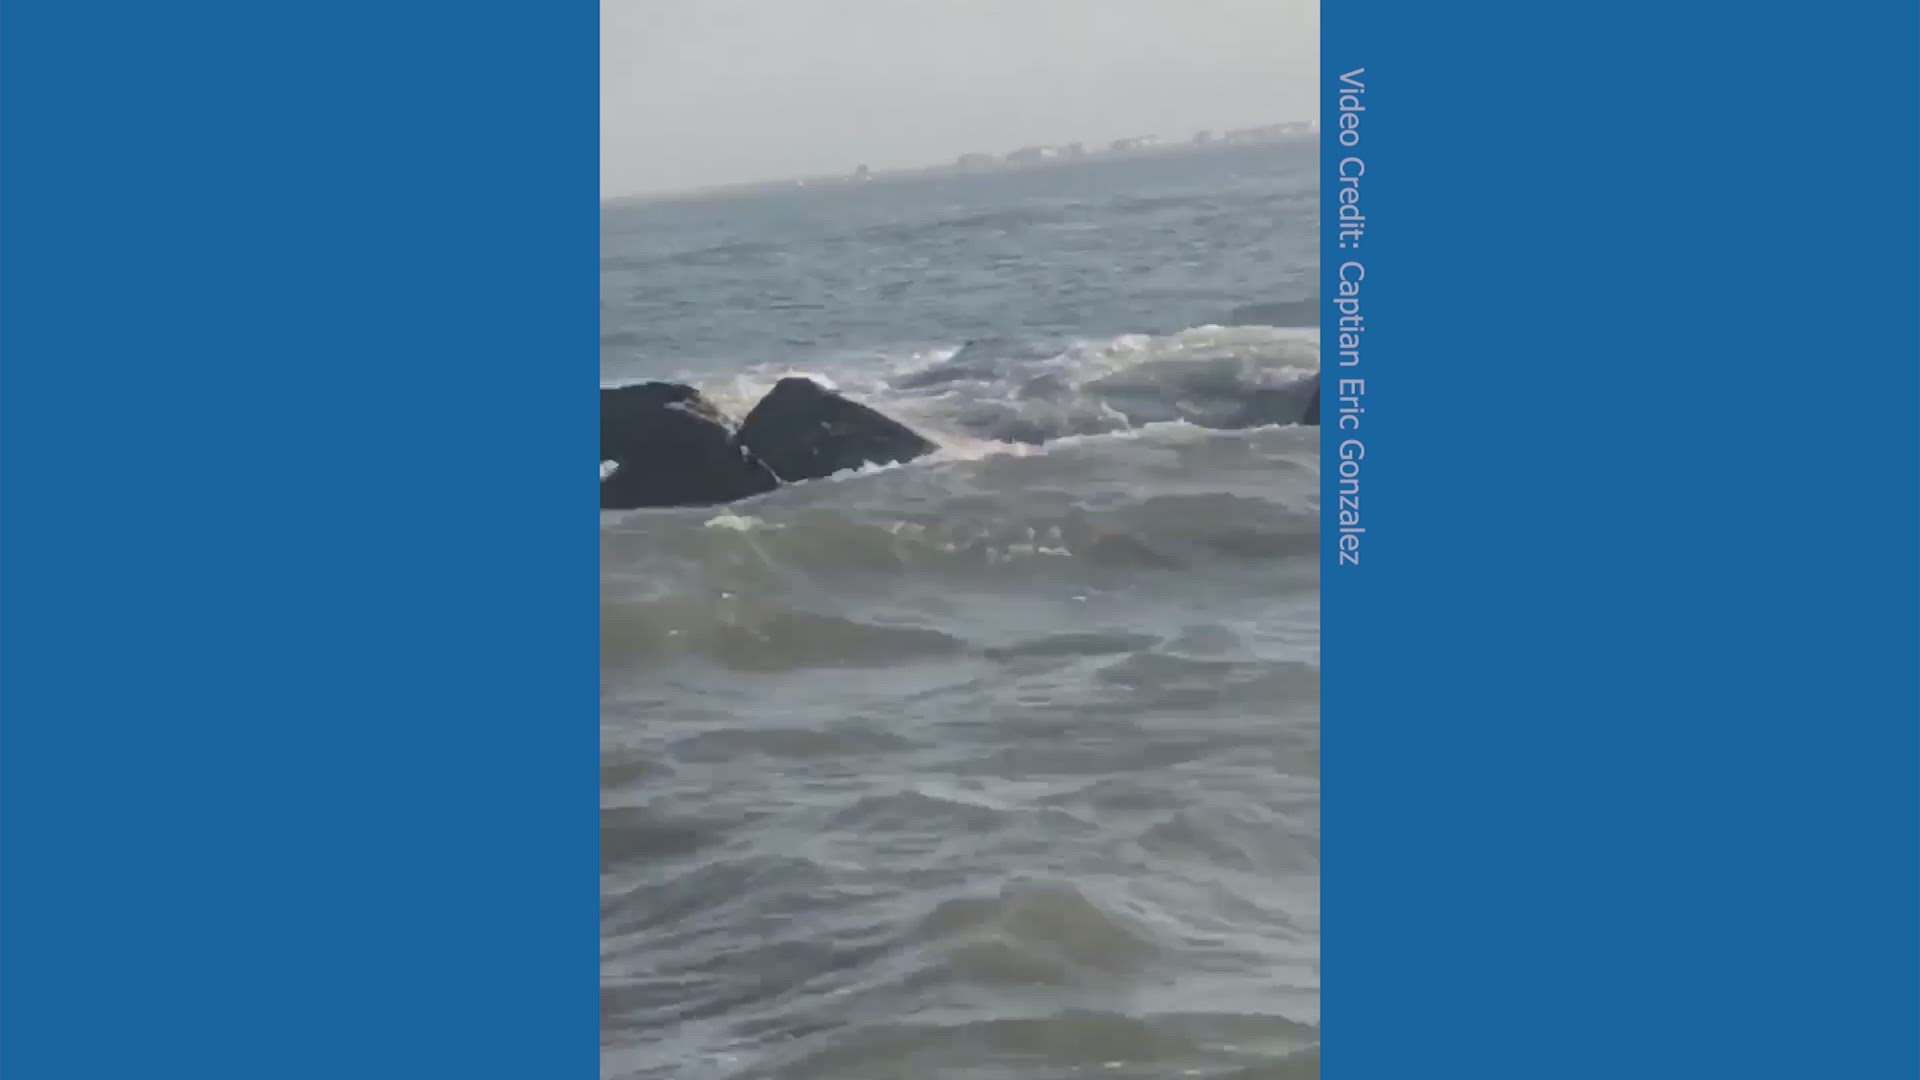 Galveston fisherman spots 6-foot alligators swimming near North Jetty.